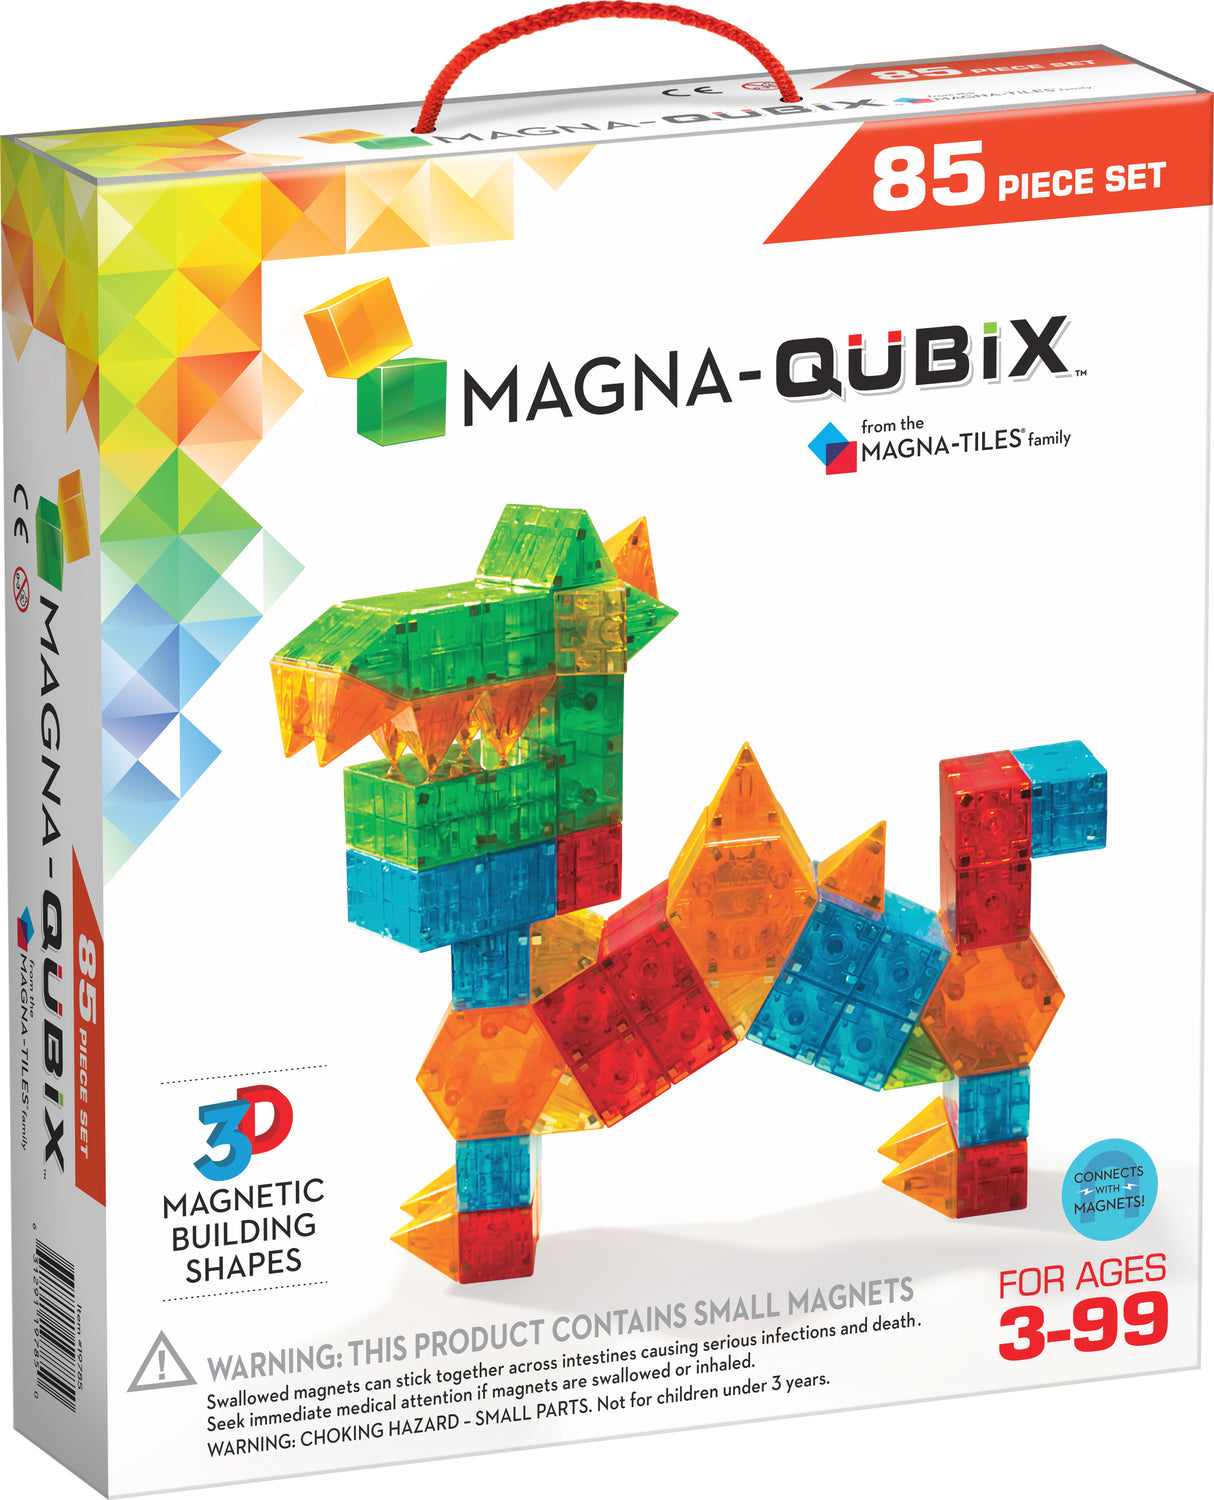 Magna-Qubix 85 Piece Set